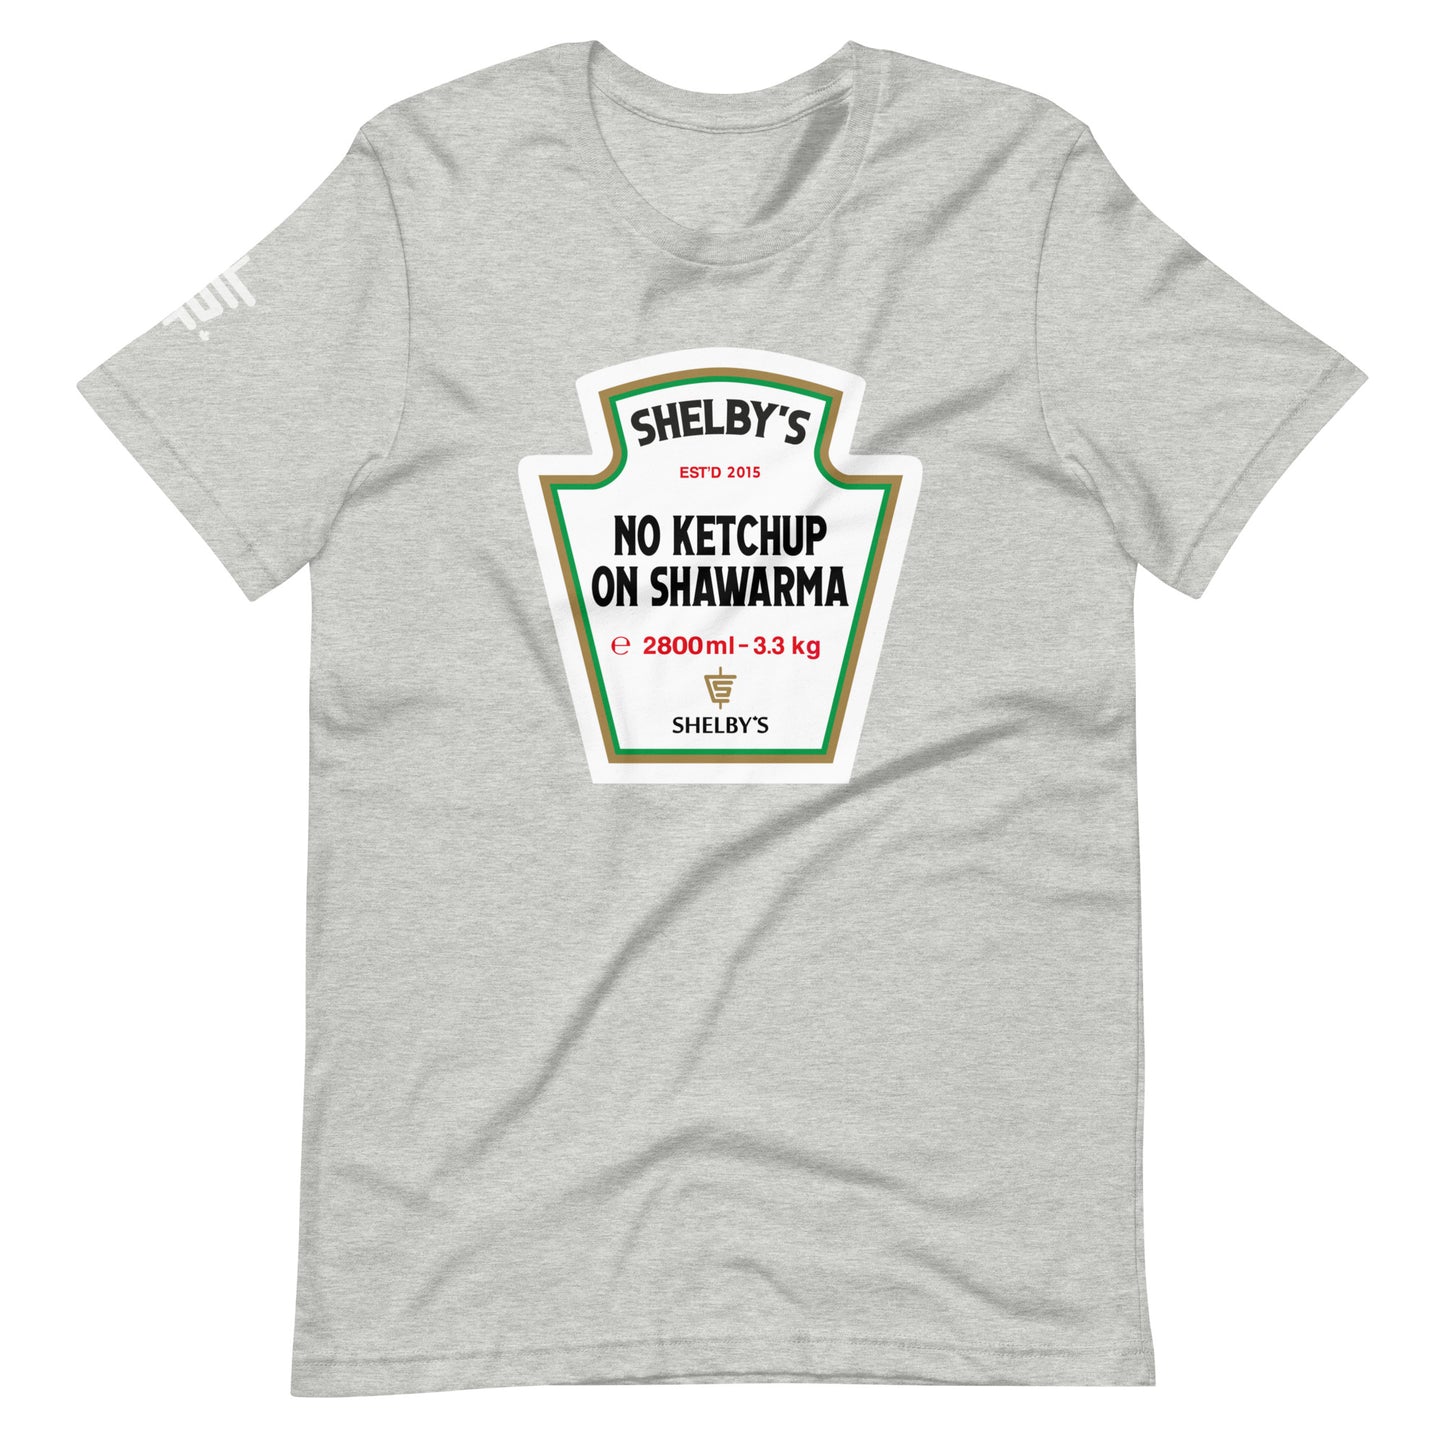 No Ketchup - T-shirt